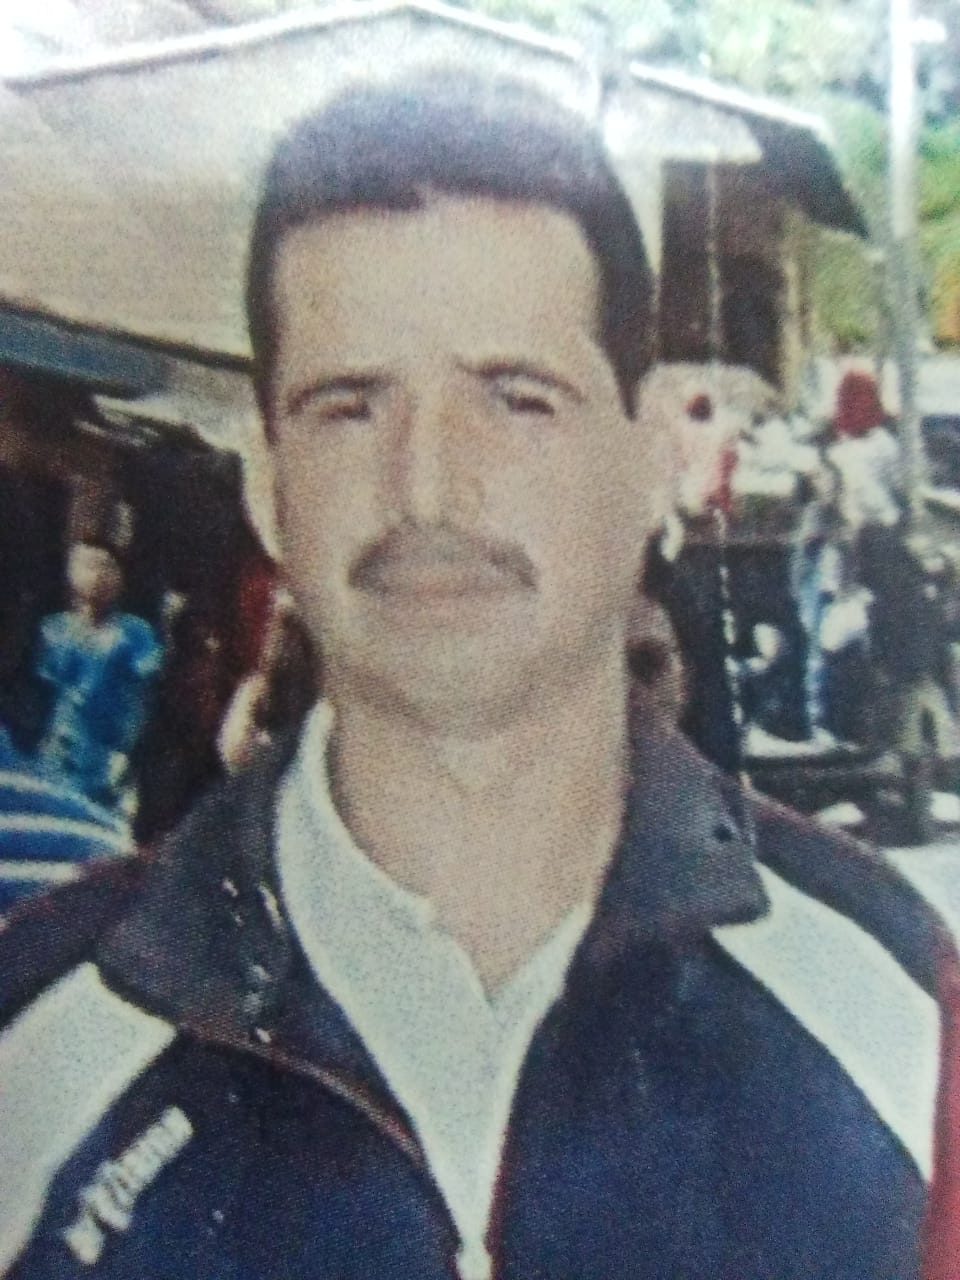 Familiares buscan a Rubén Darío Valencia, desaparecido hace 4 meses